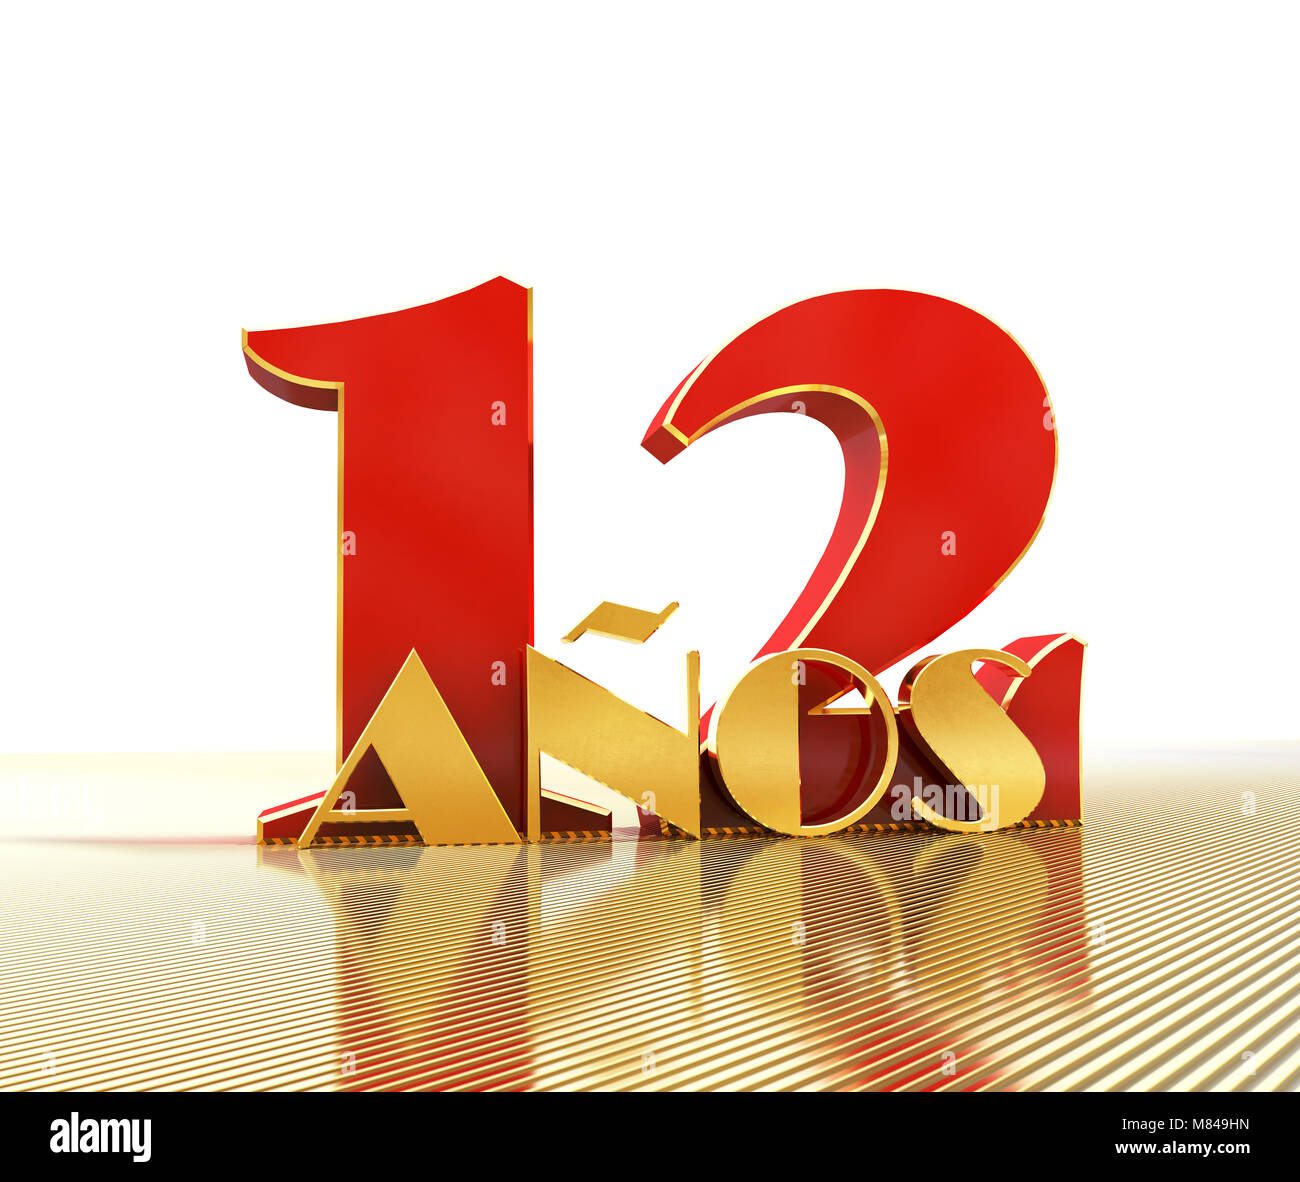 Golden numero dodici (numero 12) e la parola "anni" contro lo sfondo della prospettiva di linee d'oro. Traduzione dallo spagnolo - anni. 3D illu Foto Stock